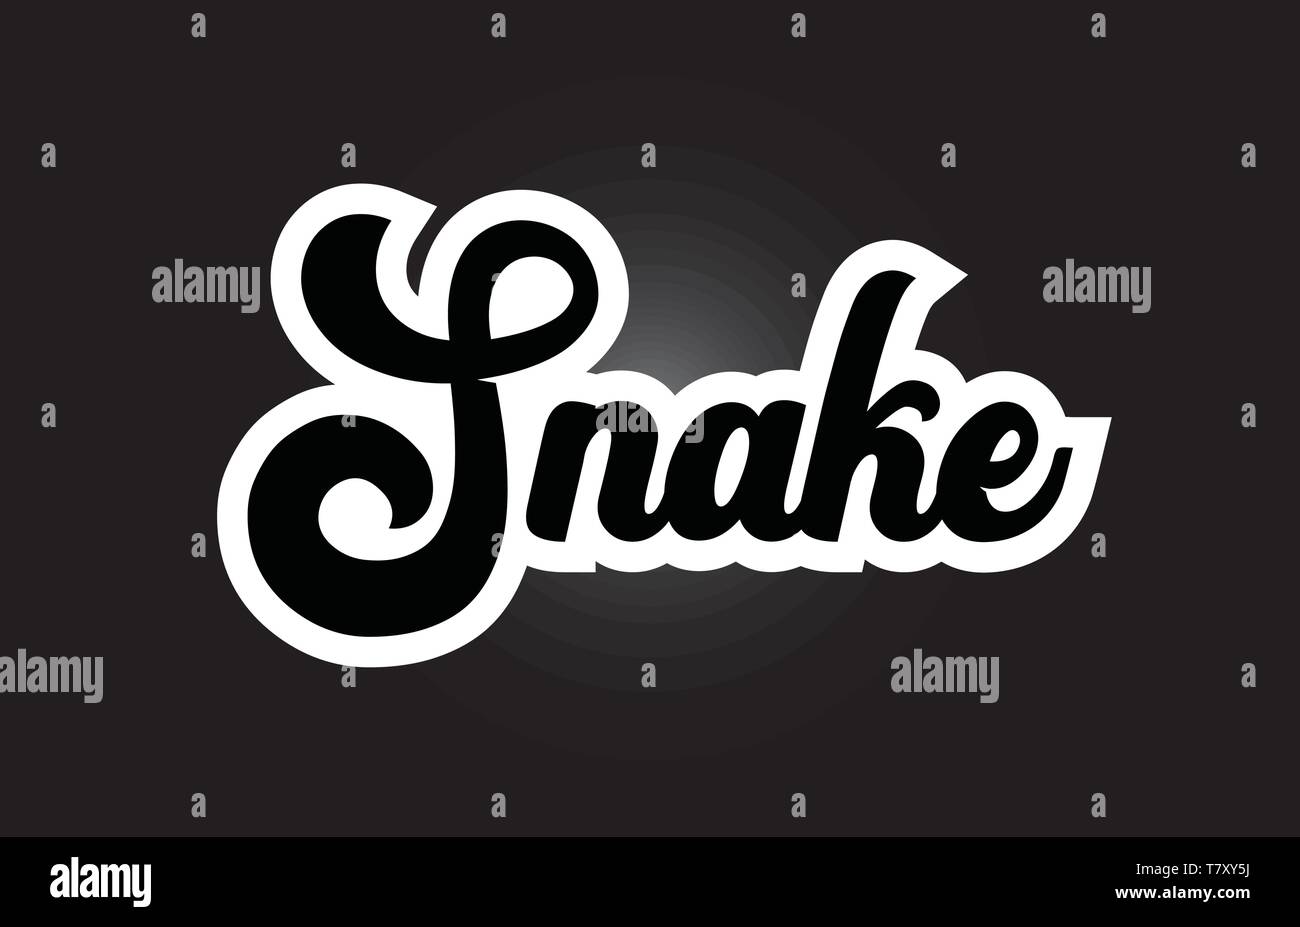 Snake part écrit un texte pour typographie iocn dessin en noir et blanc. Peut être utilisé pour un logo, image de marque ou de la carte Illustration de Vecteur